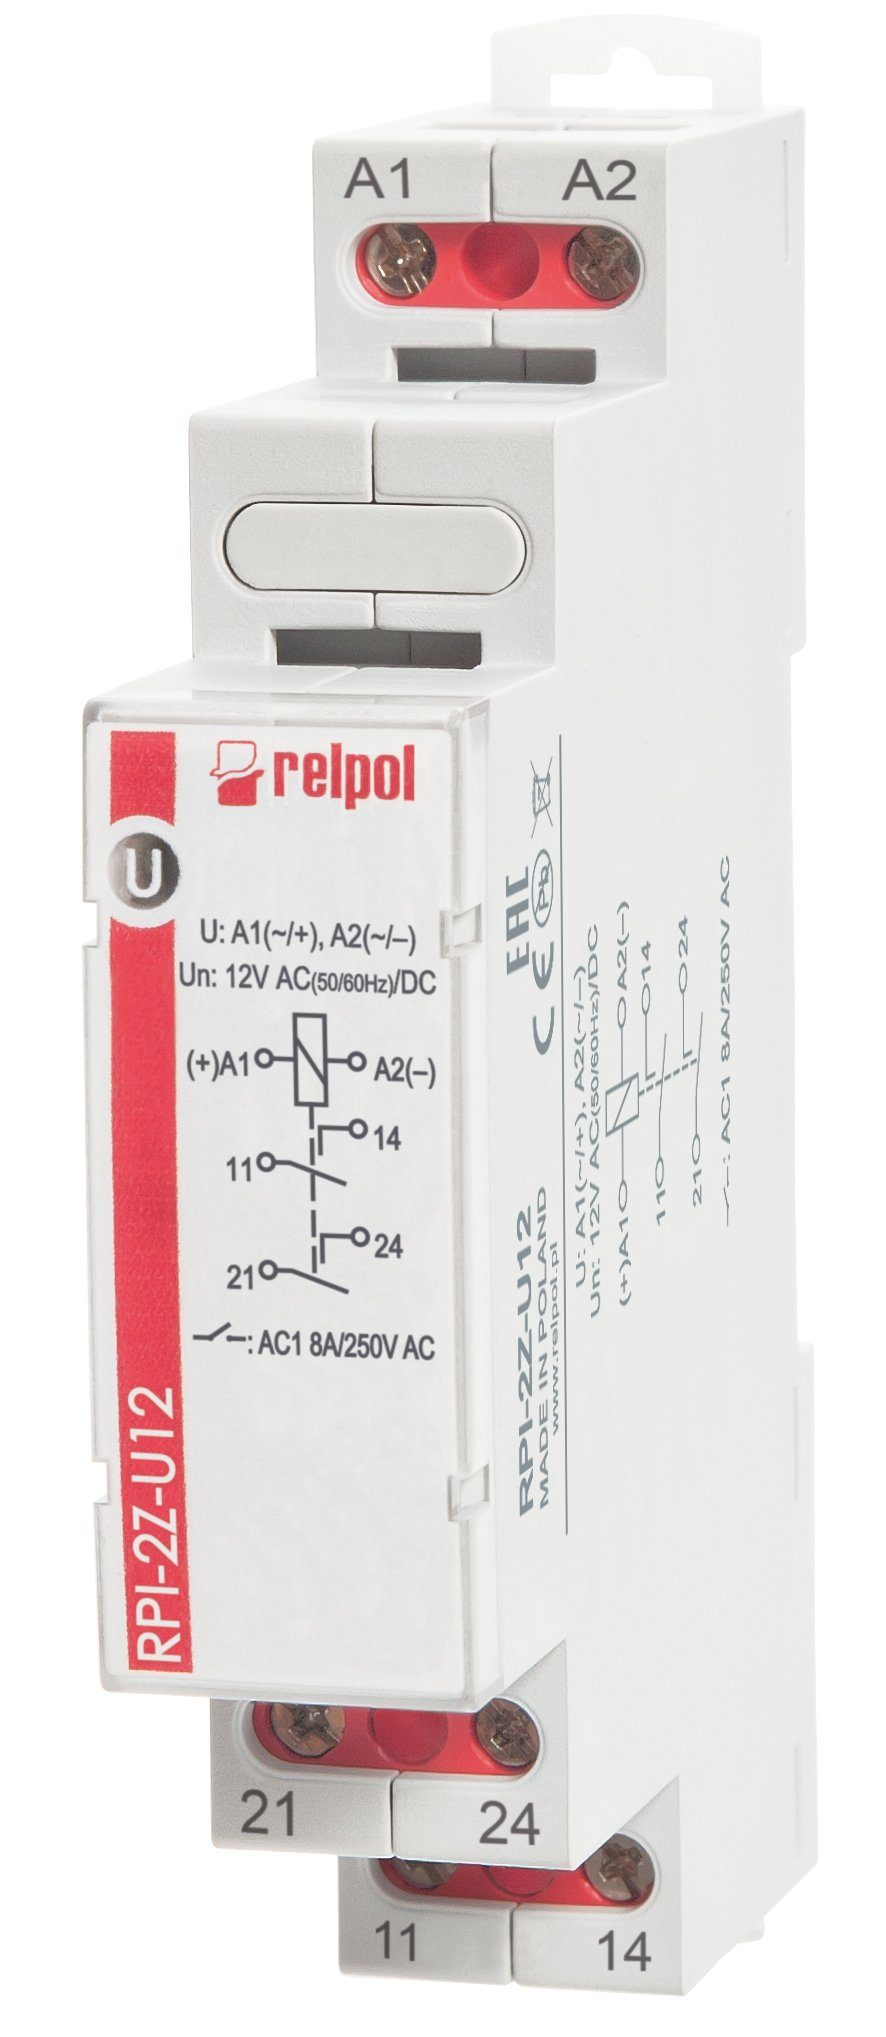 Relpol Verteilerbox RPI-2Z-U12 - 12V AC/DC 8A Installationsrelais 2 Schliesser, Schaltrelais für Hutschiene